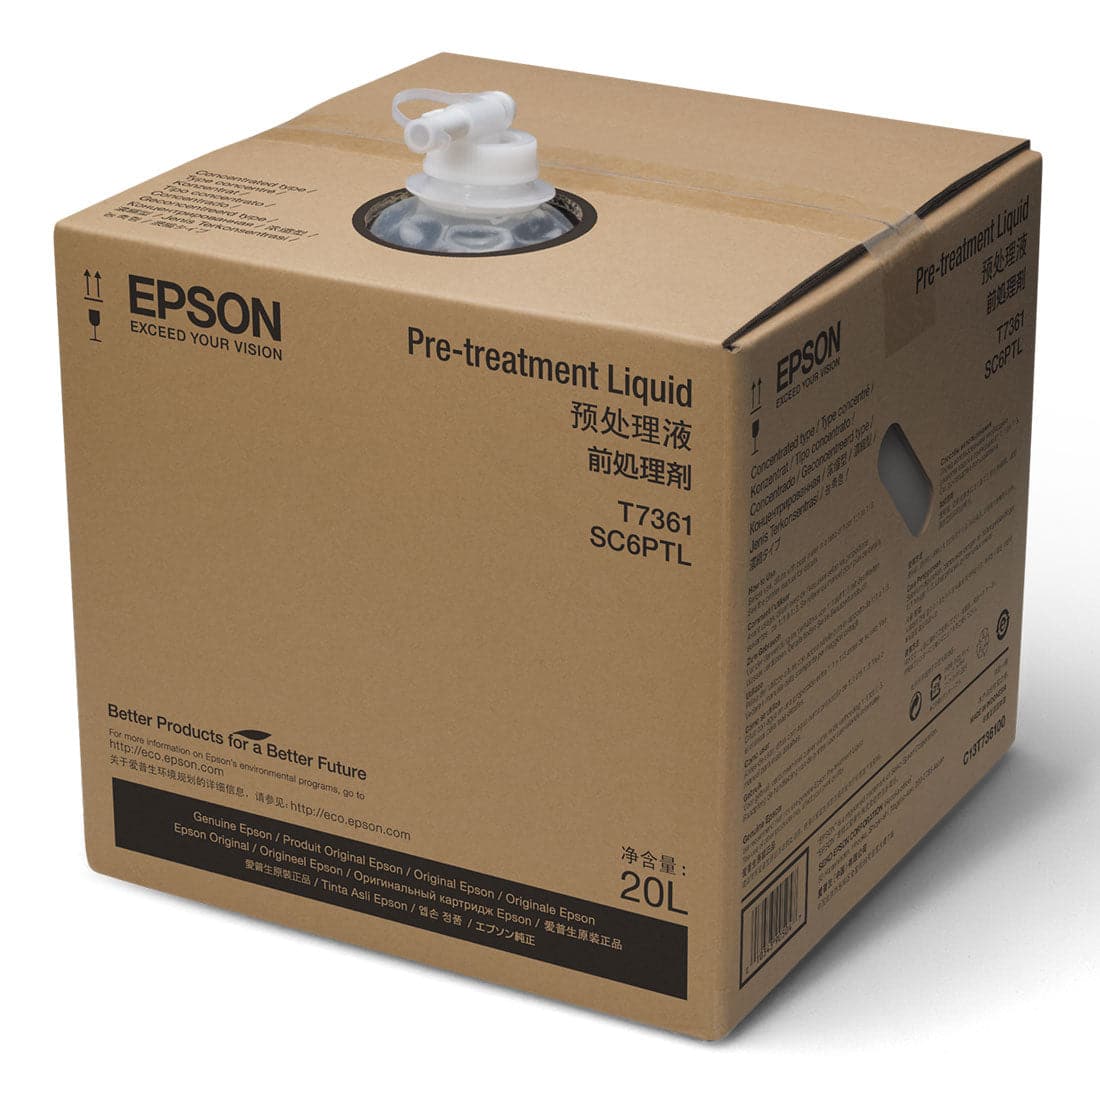 Epson® Pretreatment Fluid For Cotton - Joto Imaging Supplies US